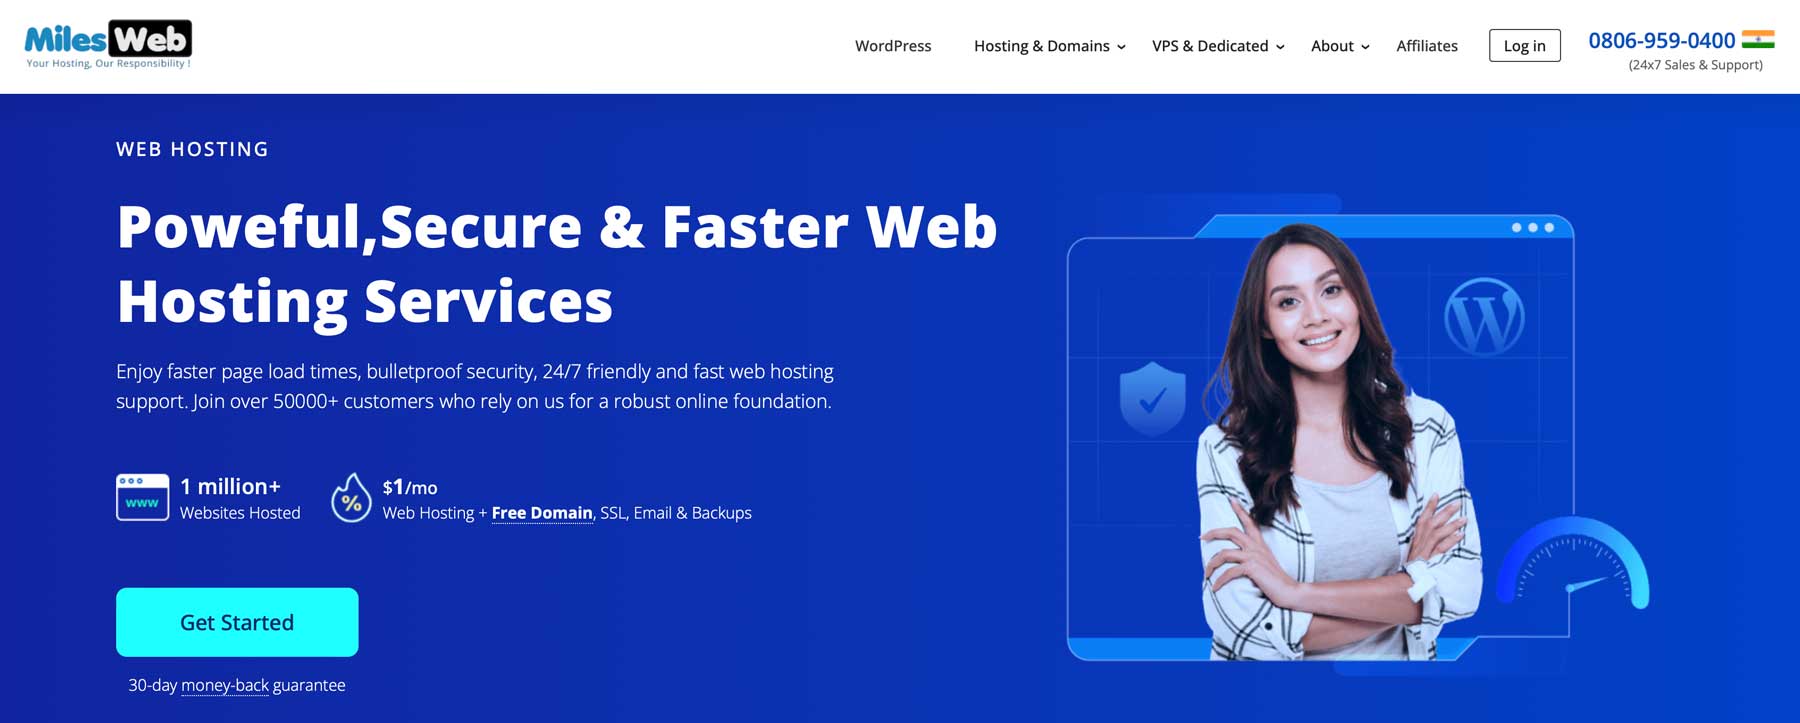 Milesweb AWS hosting